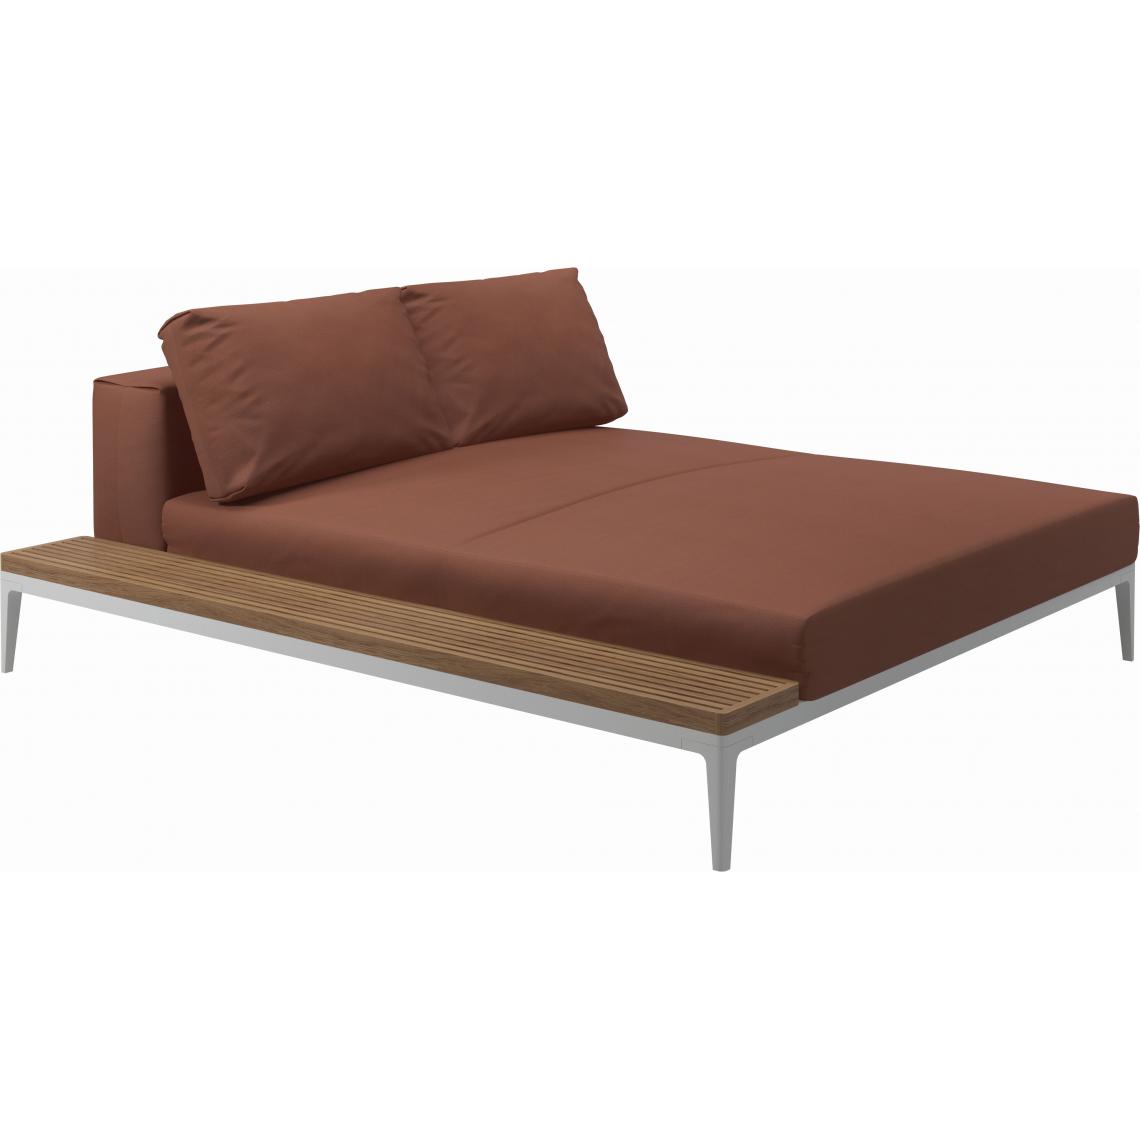 Gloster - Canapé Grid Module de relaxation avec table - Blend Clay - GlosterGridTeak - blanc - Ensembles canapés et fauteuils